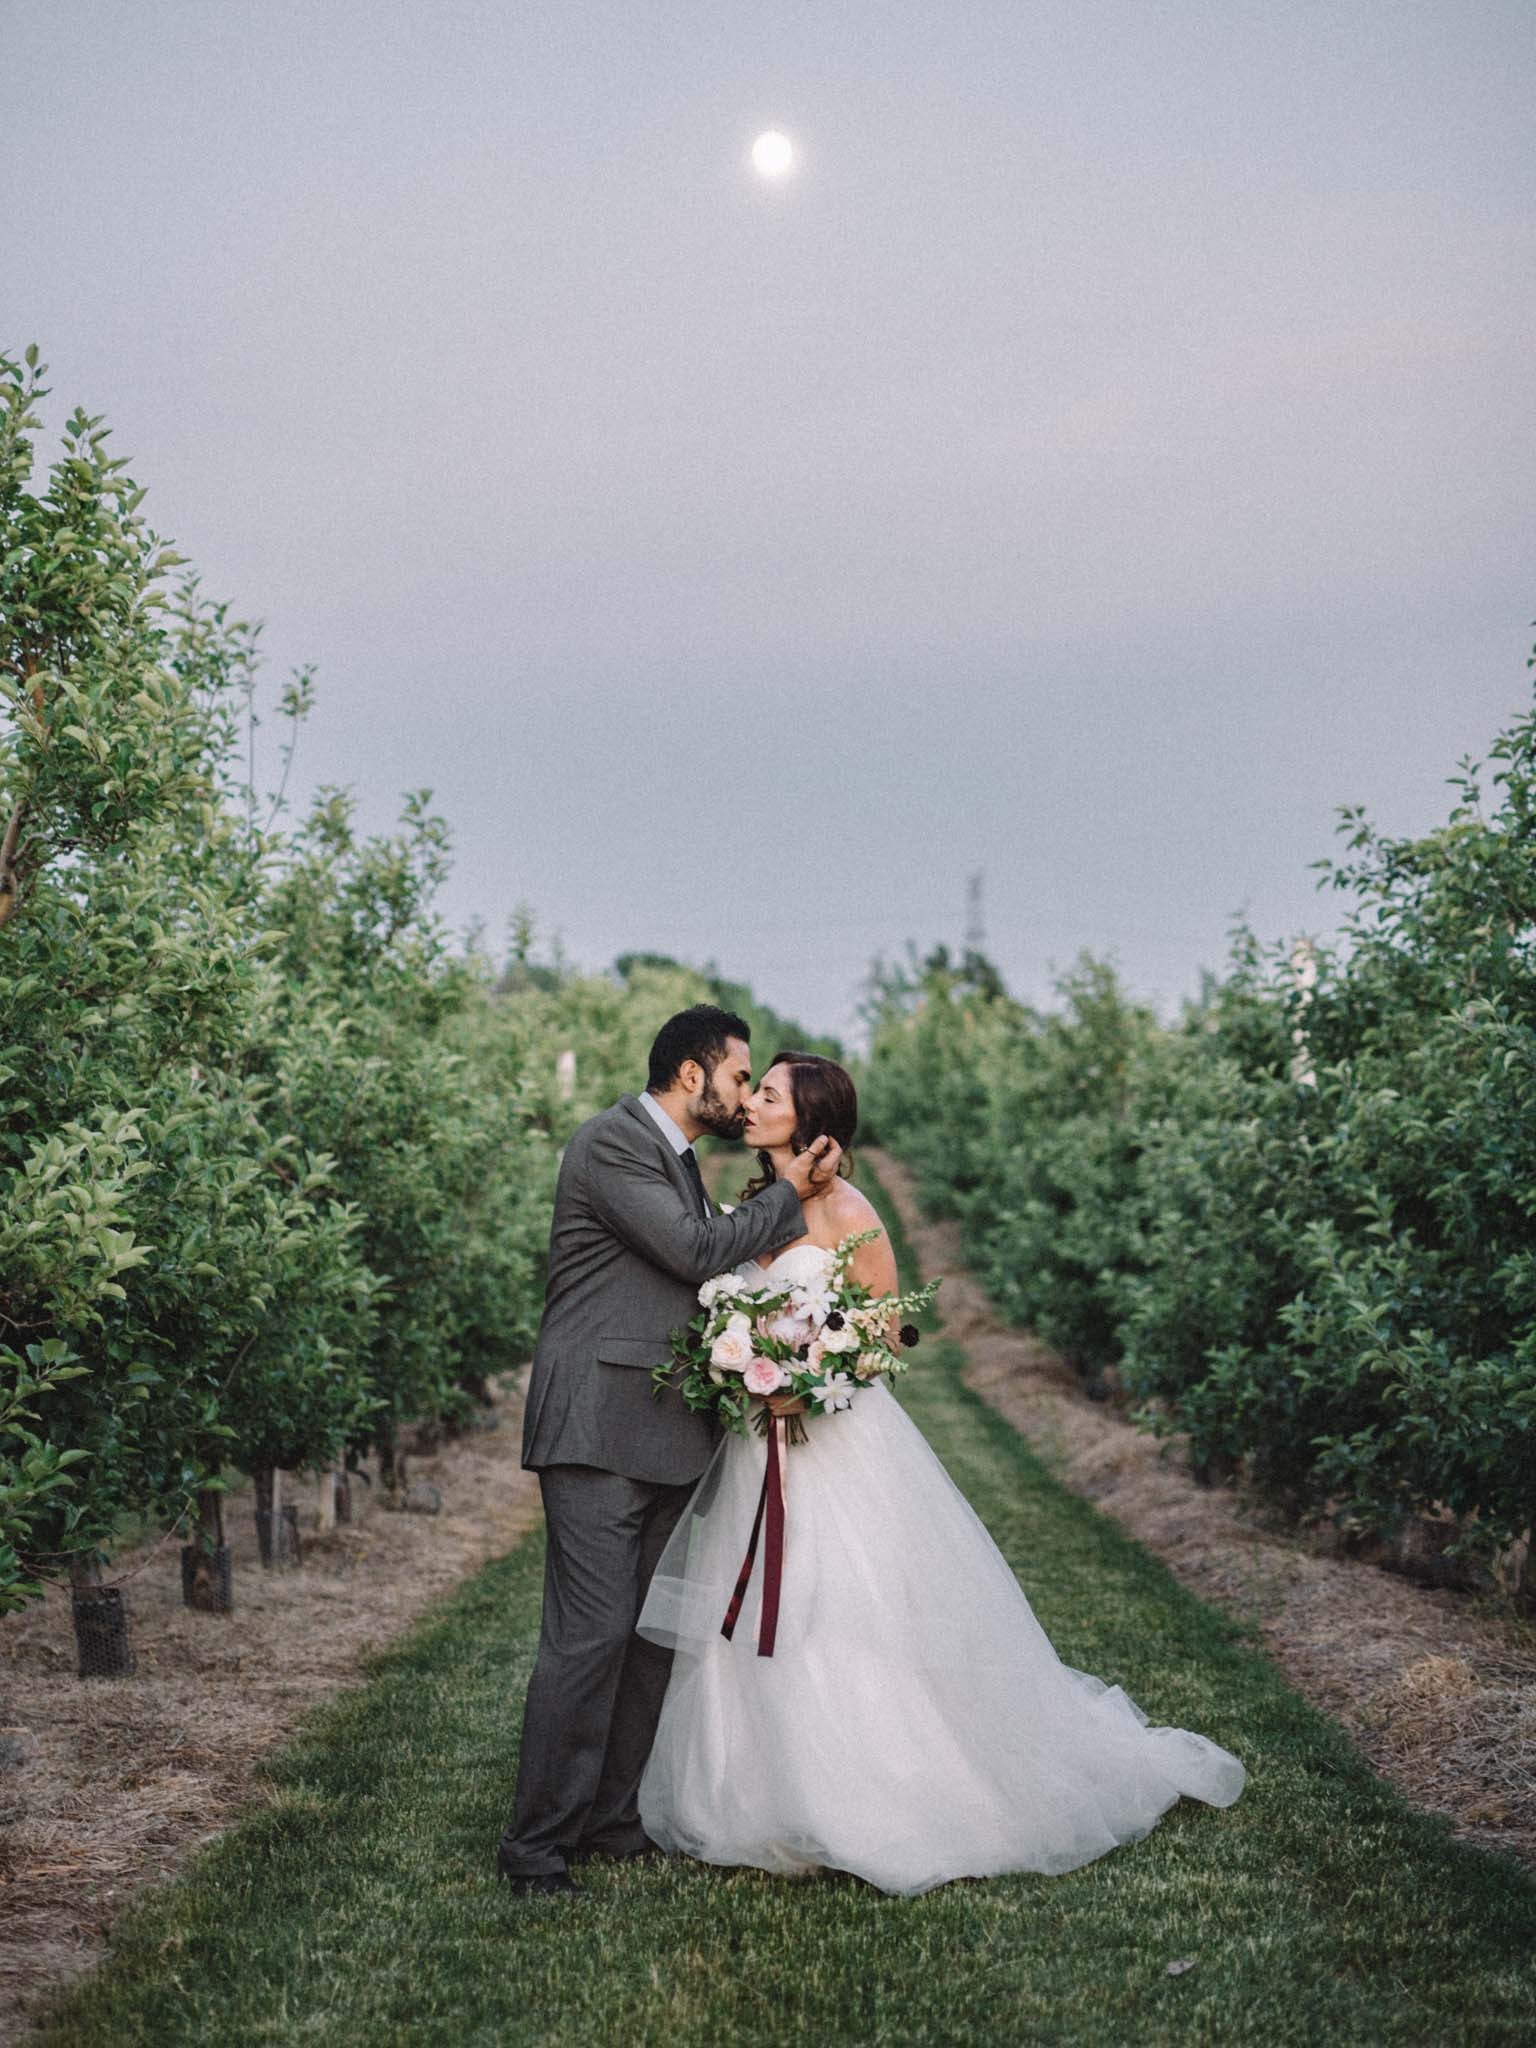 Toronto wedding photographer | Olive Photography